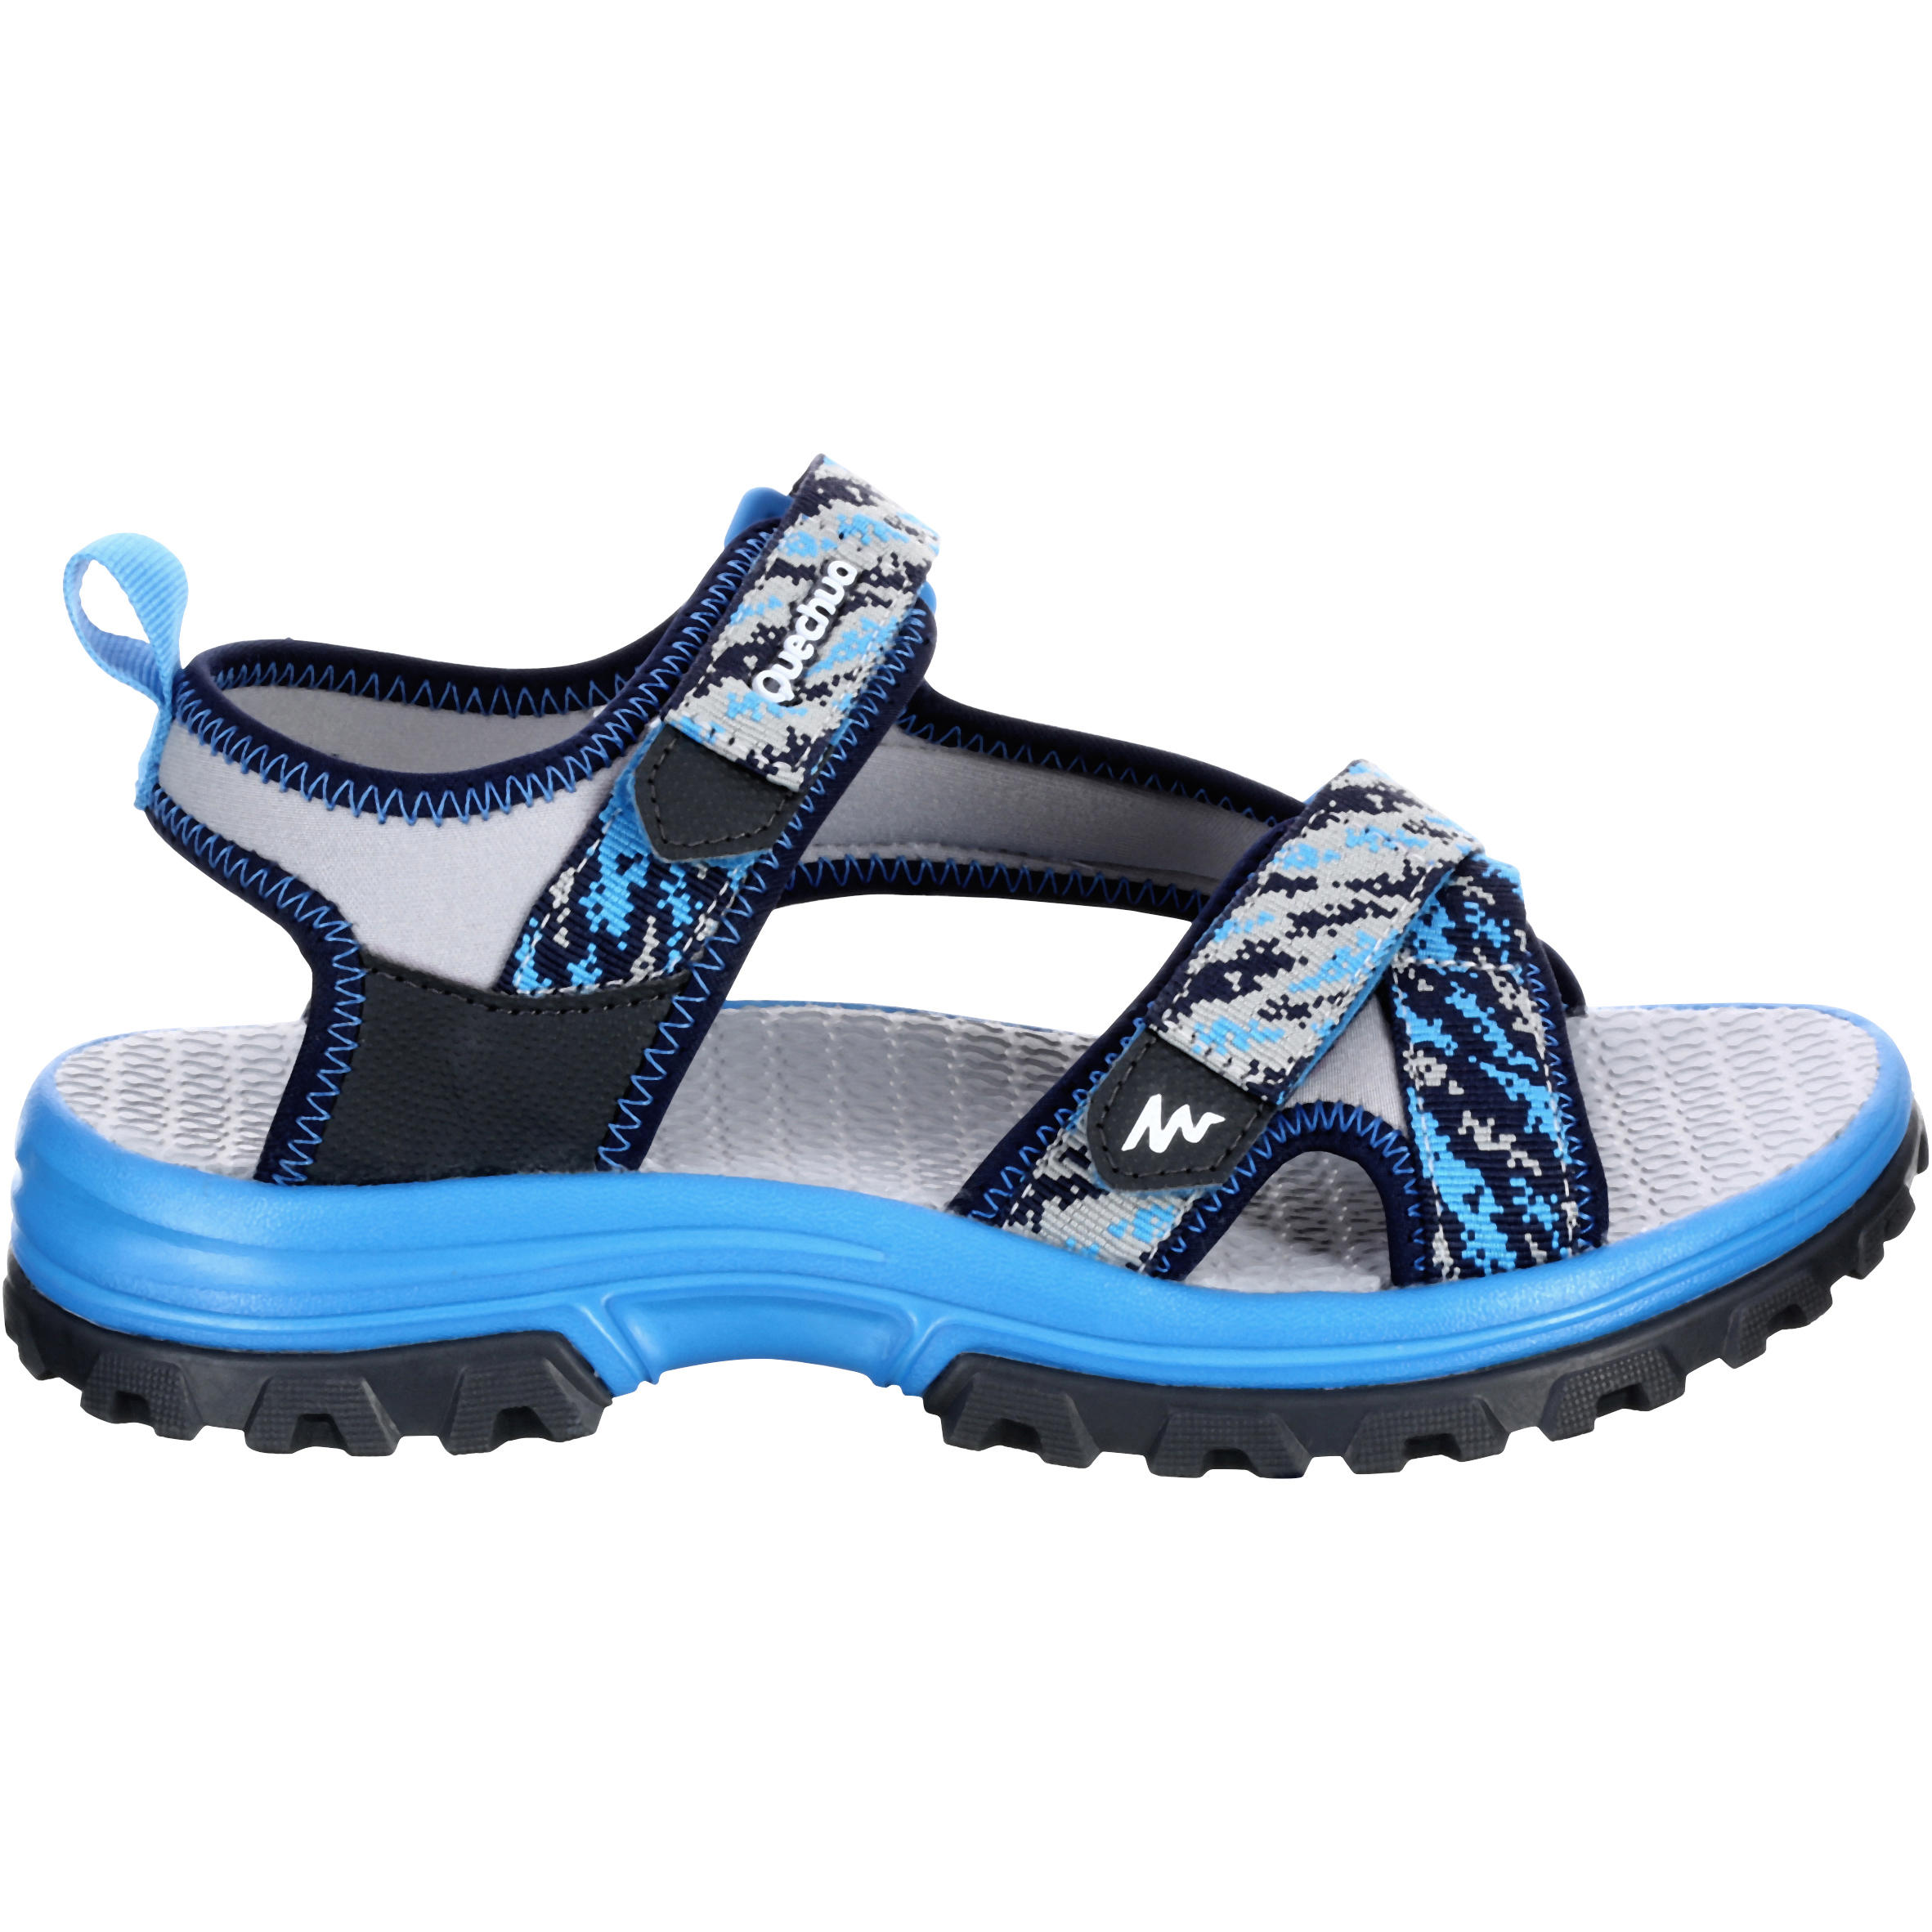 ARTENGO by Decathlon Boys & Girls Lace Tennis Shoes Price in India - Buy  ARTENGO by Decathlon Boys & Girls Lace Tennis Shoes online at Flipkart.com